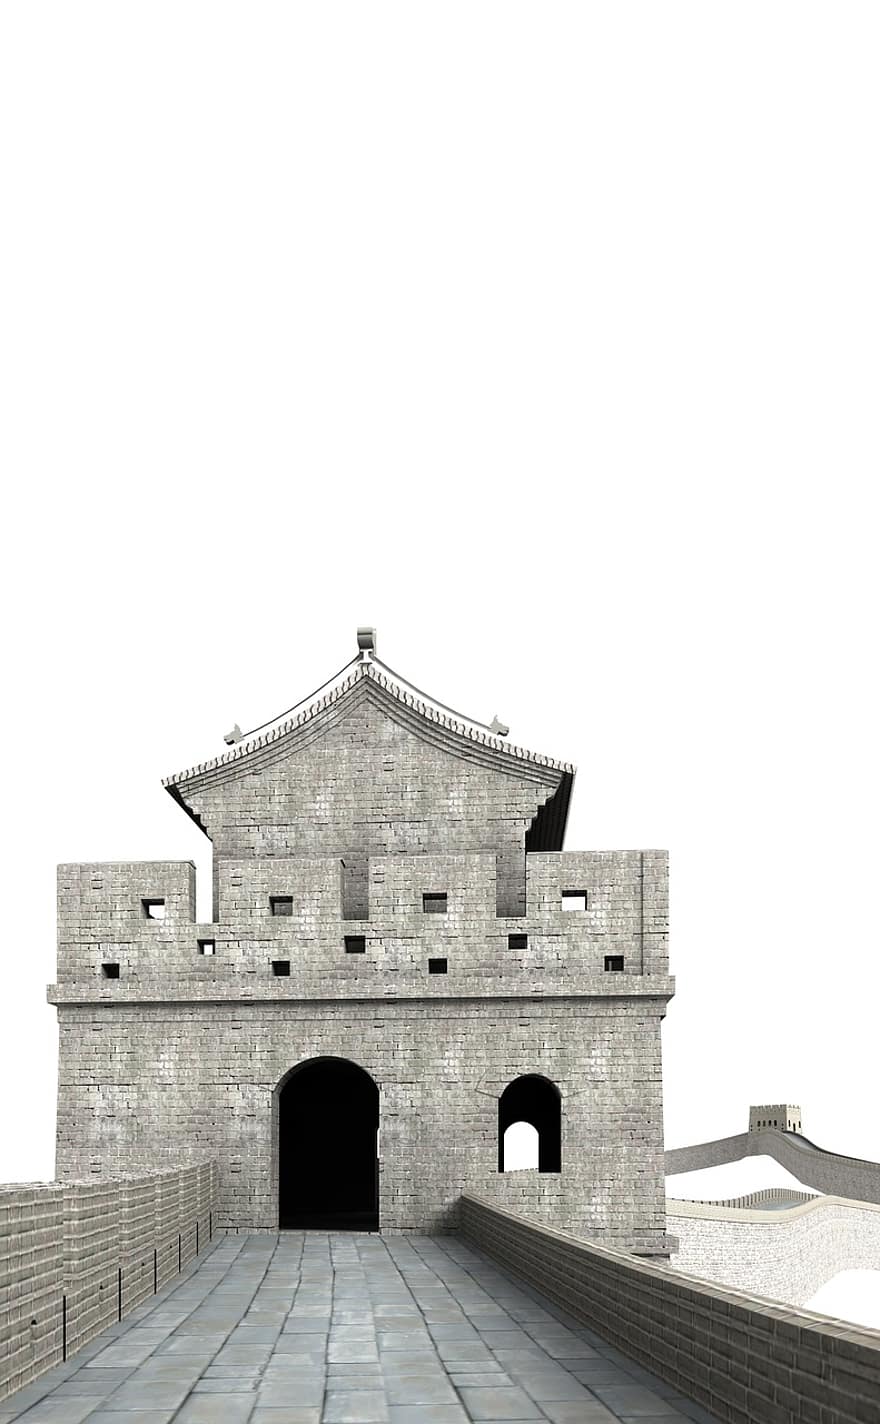 groß, Wand, China, Gebäude, Kirche, Sehenswürdigkeiten, historisch, Touristen, Attraktion, Wahrzeichen, Fassade